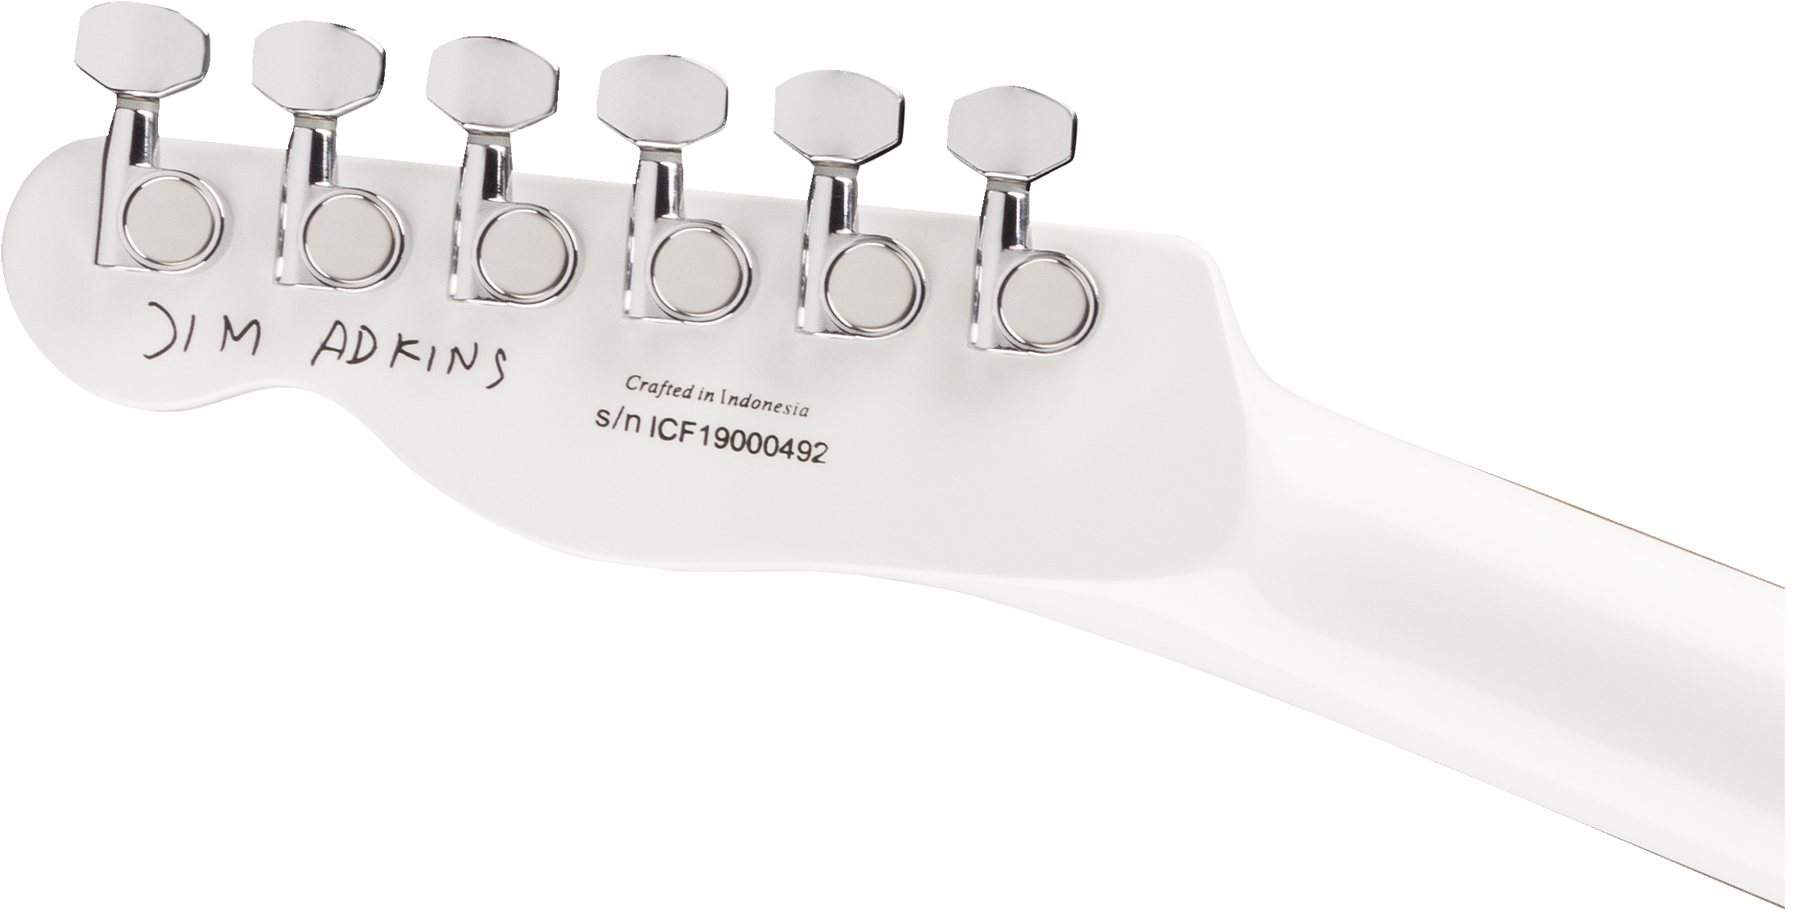 Fender Jim Adkins Tele Ja-90 Mex Signature 2p90 Lau - White - Guitarra eléctrica con forma de tel - Variation 3